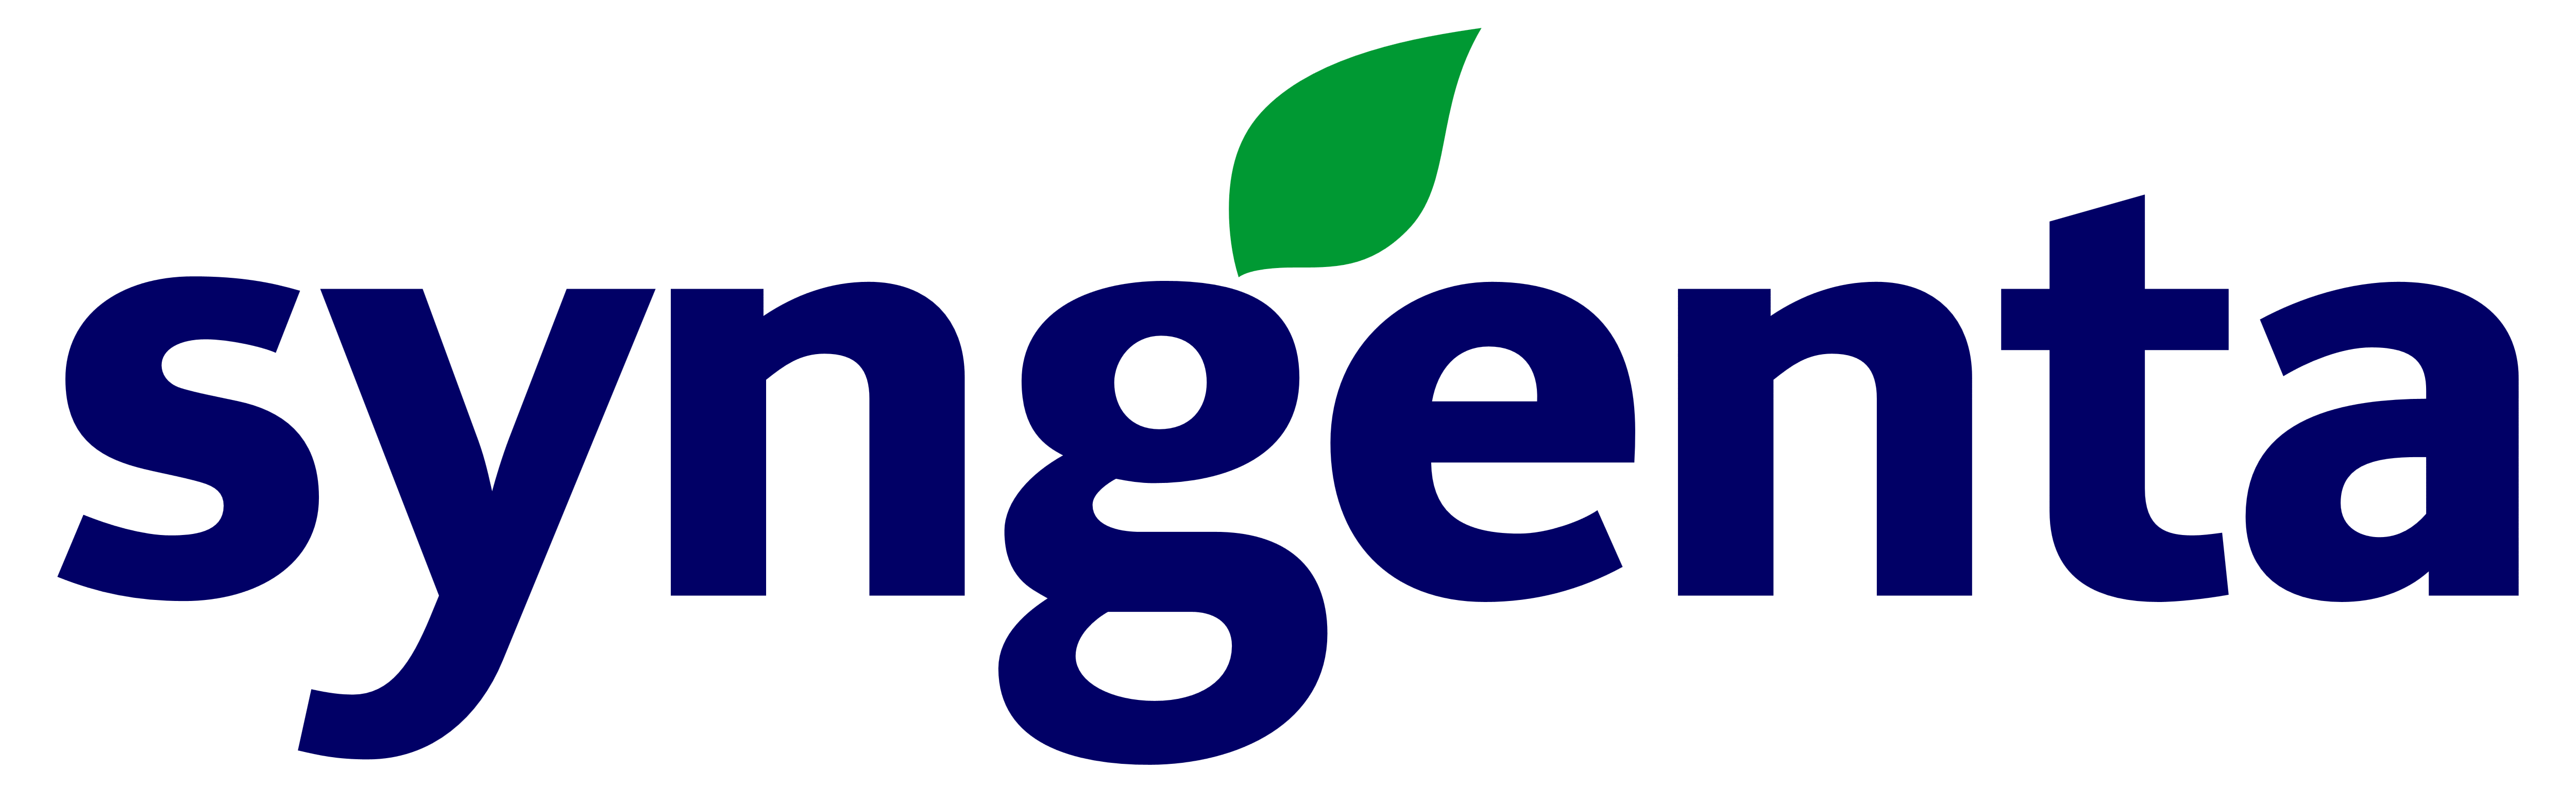 Syngenta Logo - Syngenta – Logos Download